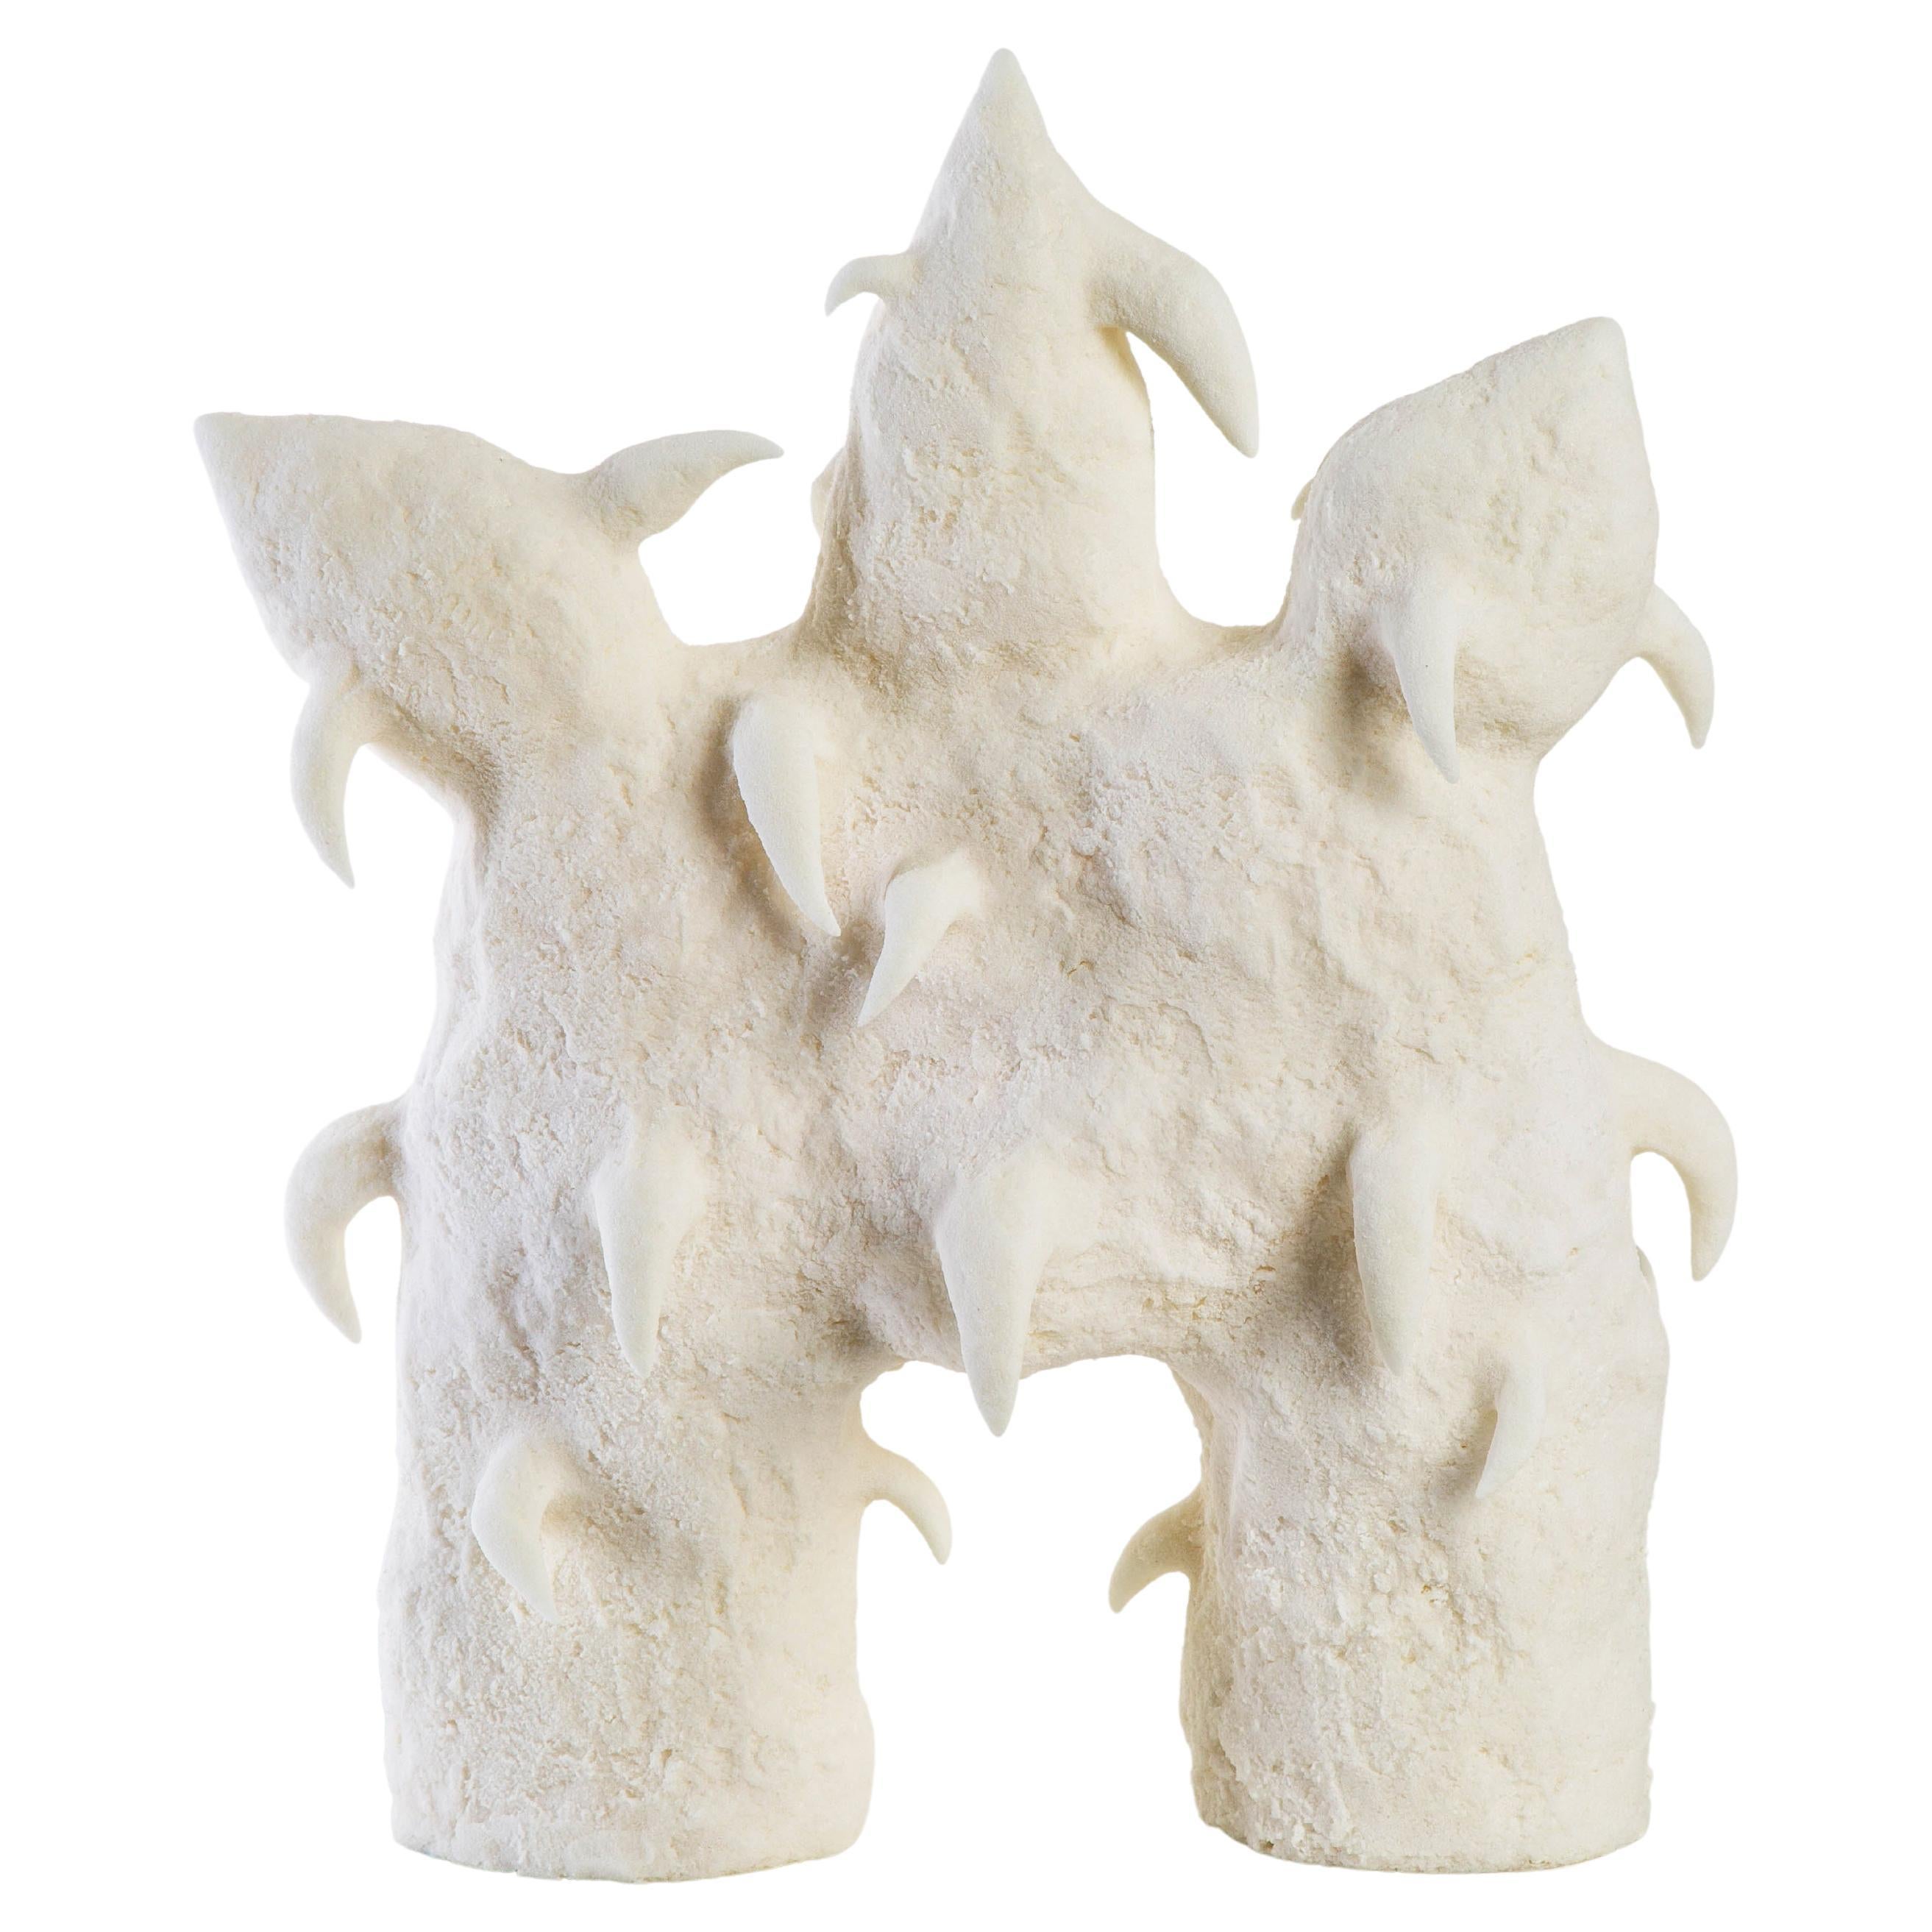 Contemporary Sculpture "Salt 5" by Jackie Slanley White Cornstarch Dough